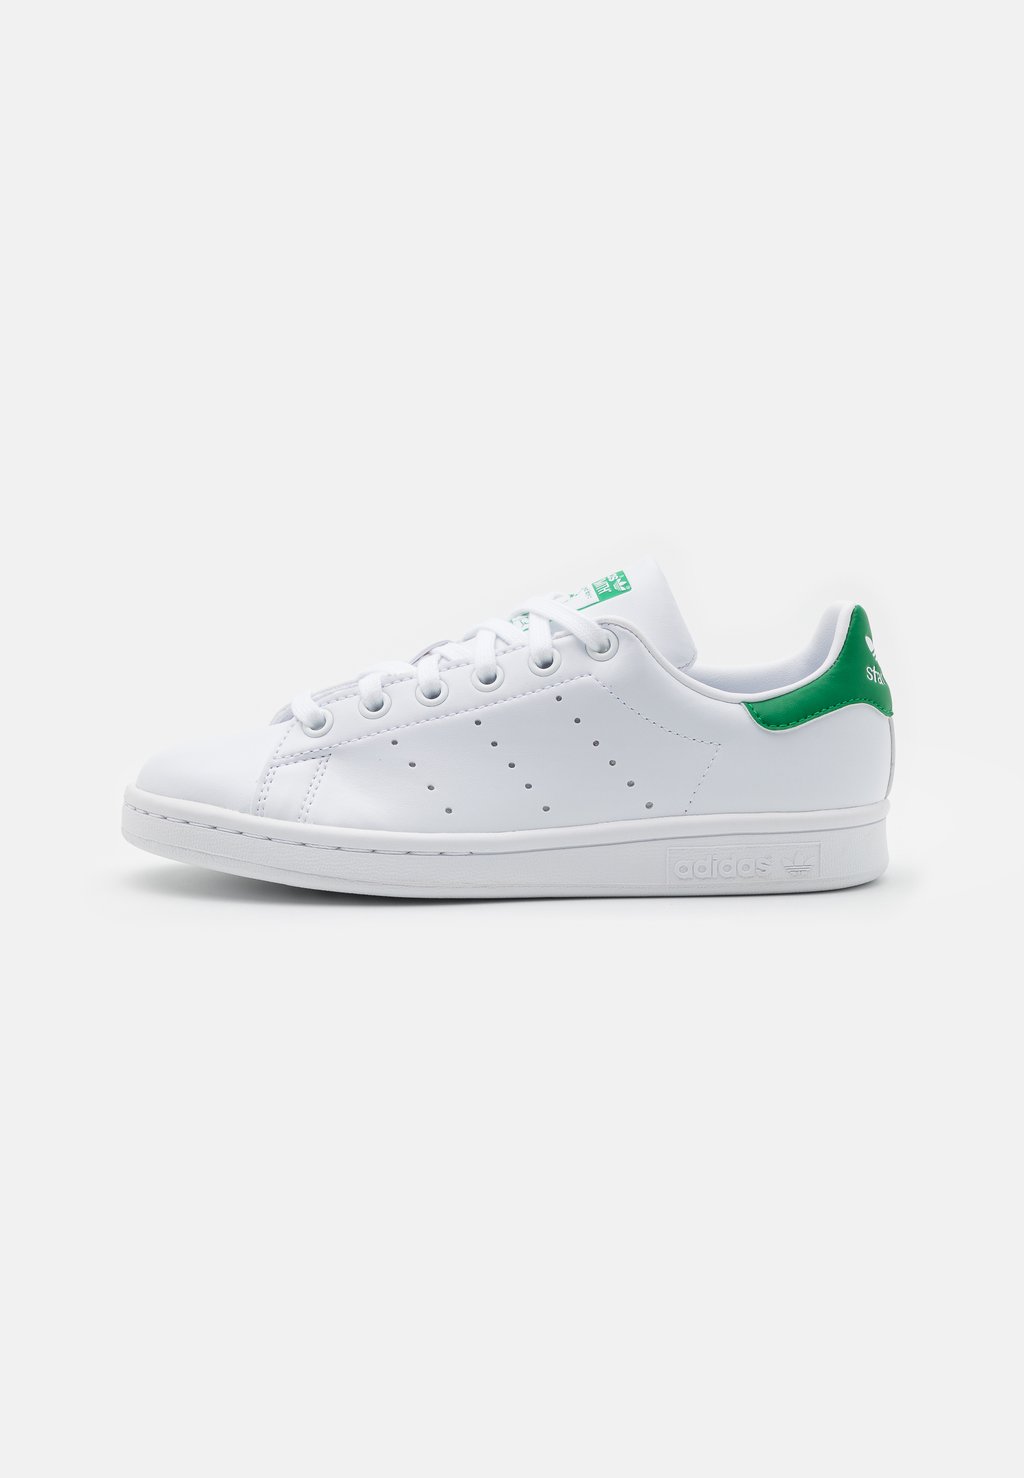 Кроссовки adidas Originals Stan Smith Unisex, обувь белый / зеленый